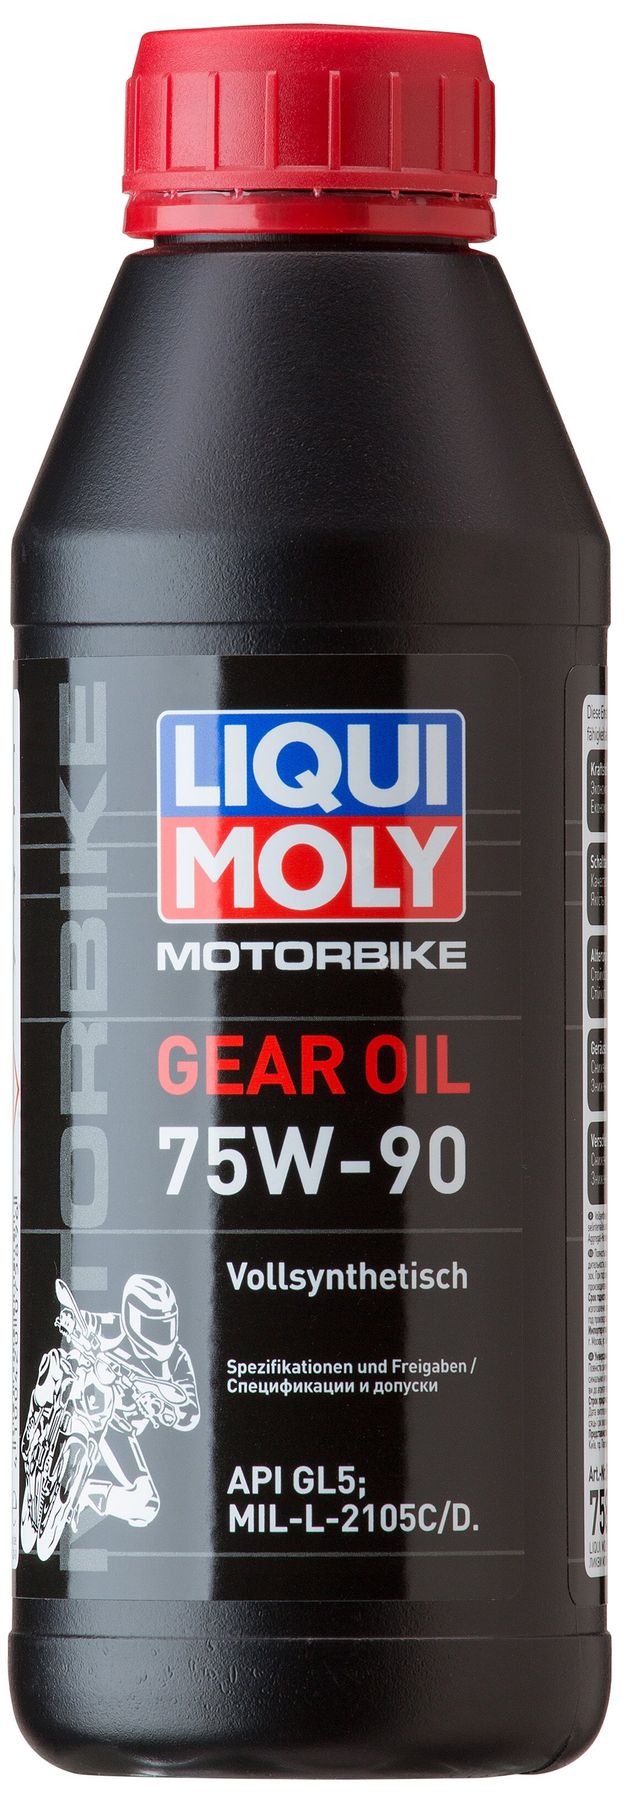 Трансмиссионные масла для мотоциклов - LIQUI MOLY | Официальный .